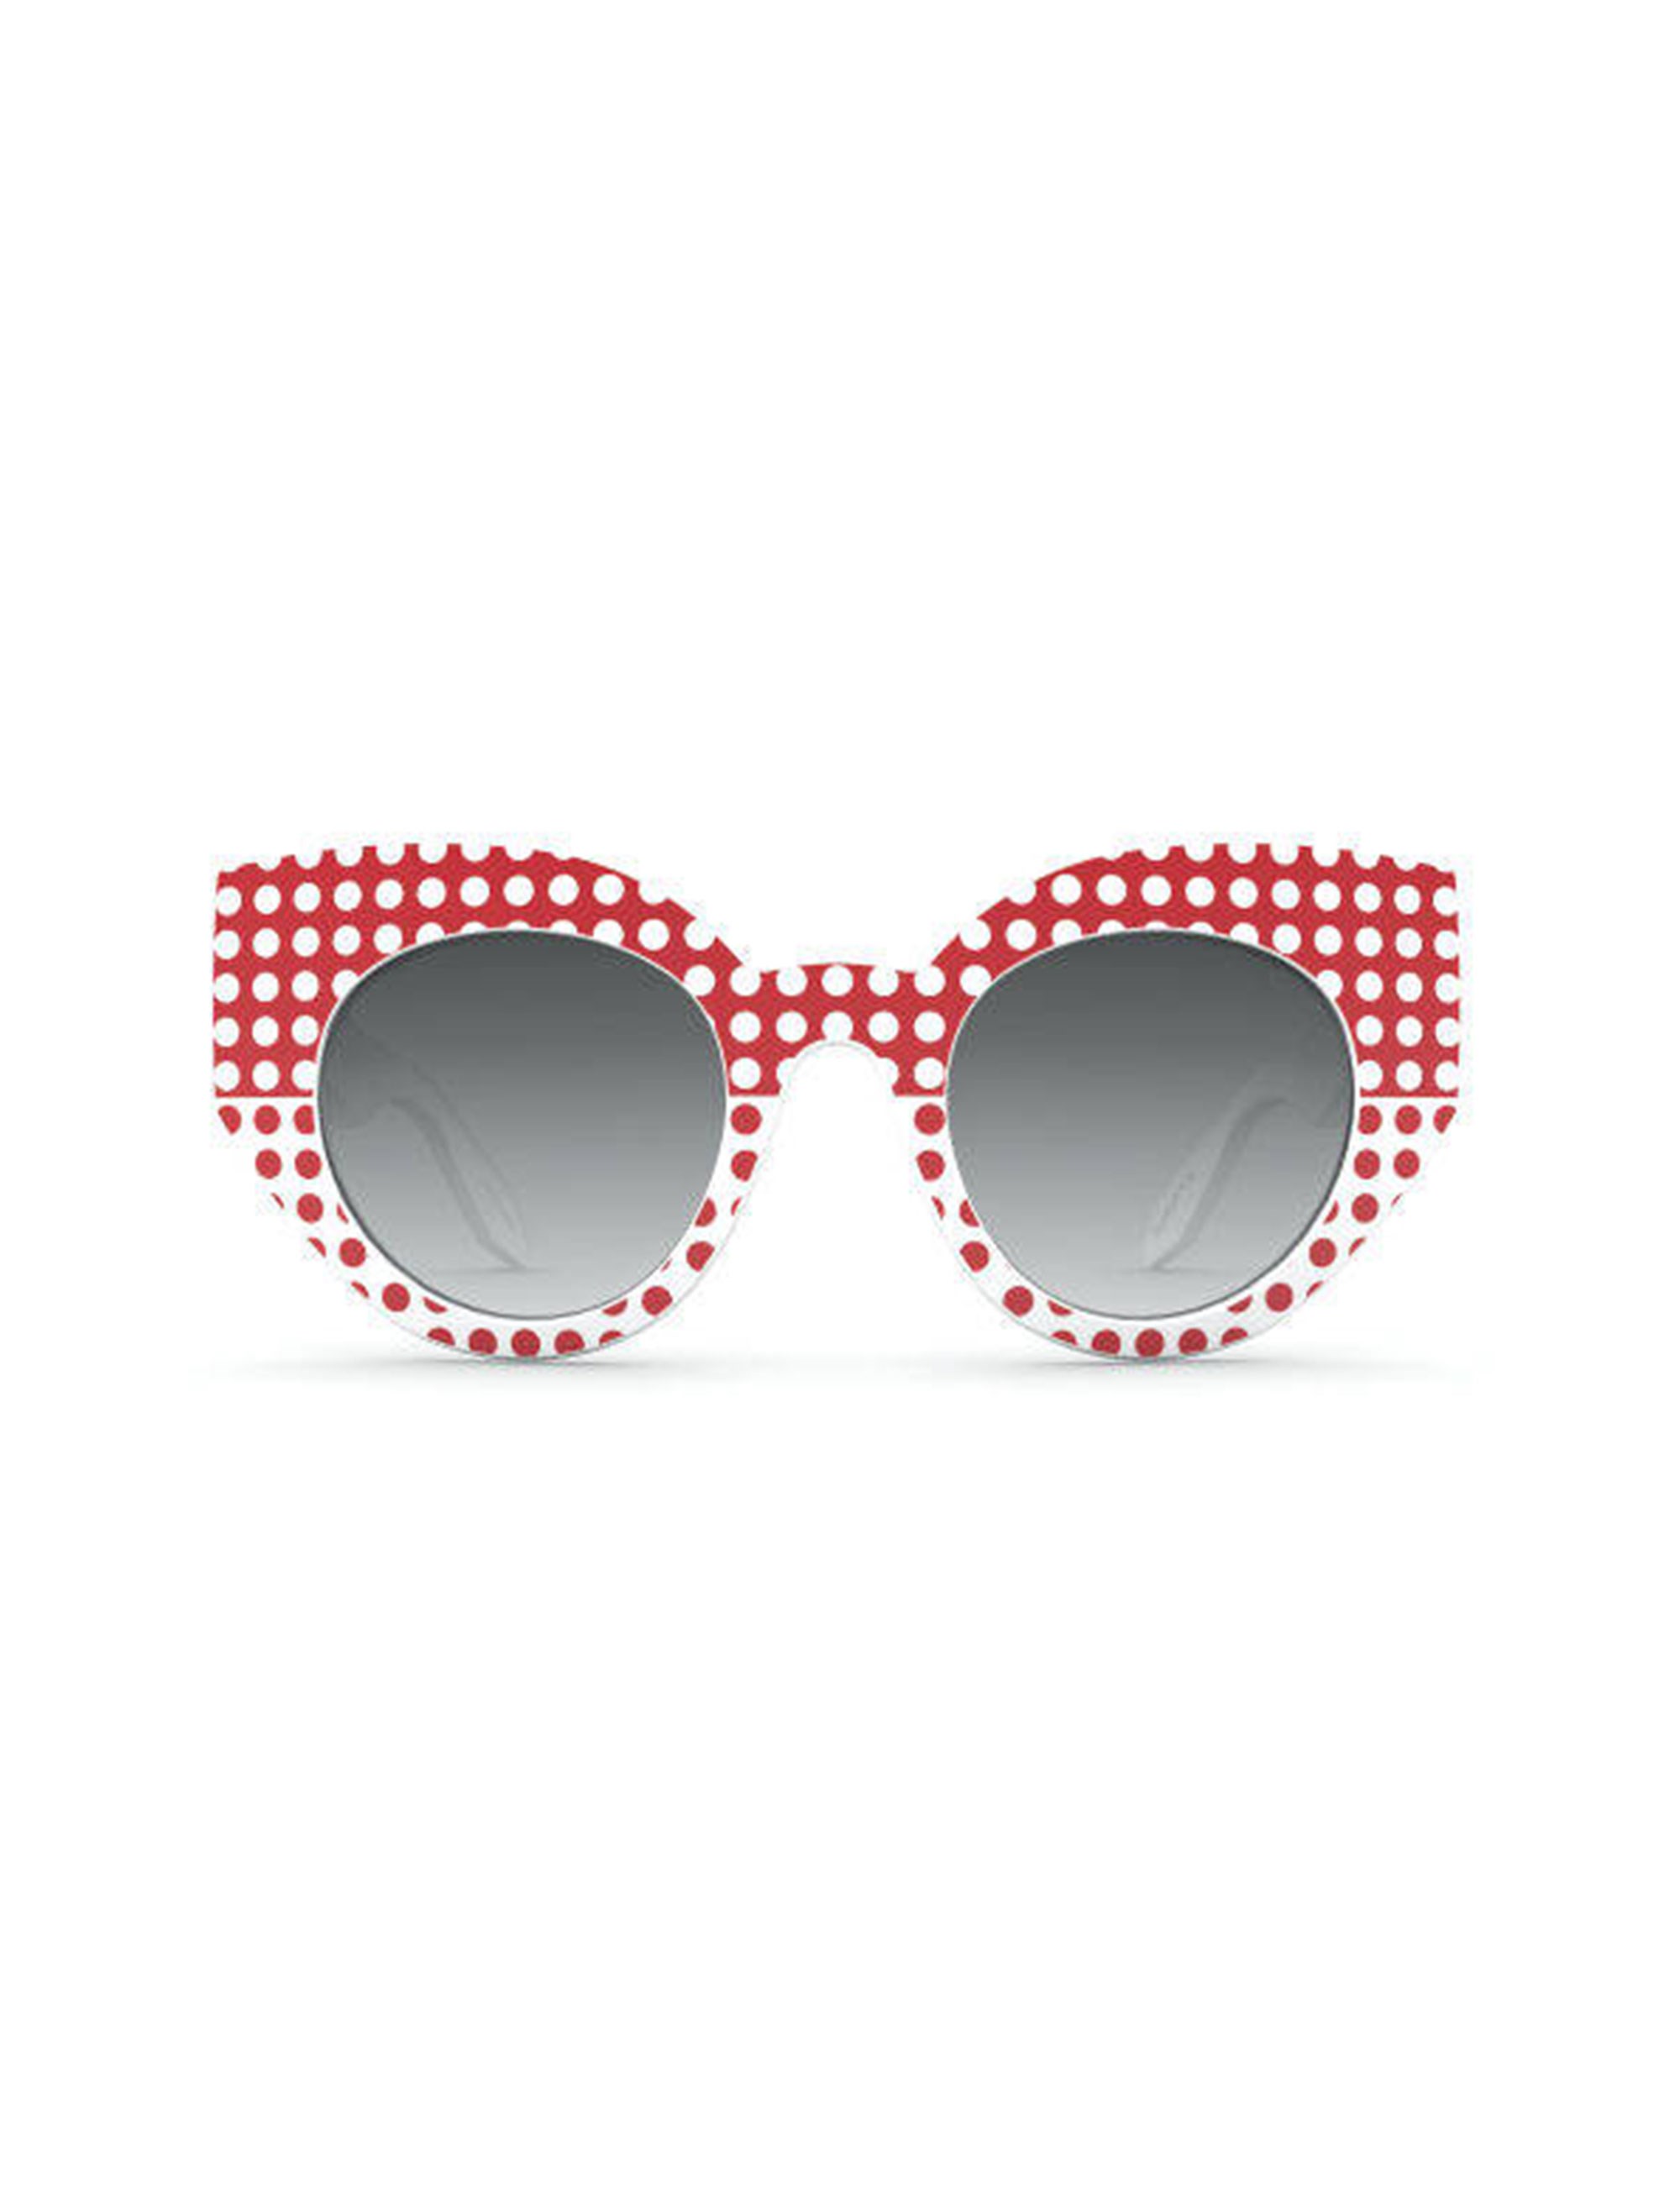 عینک آفتابی گربه ای زنانه - سواچ - سفيد و قرمز - 1